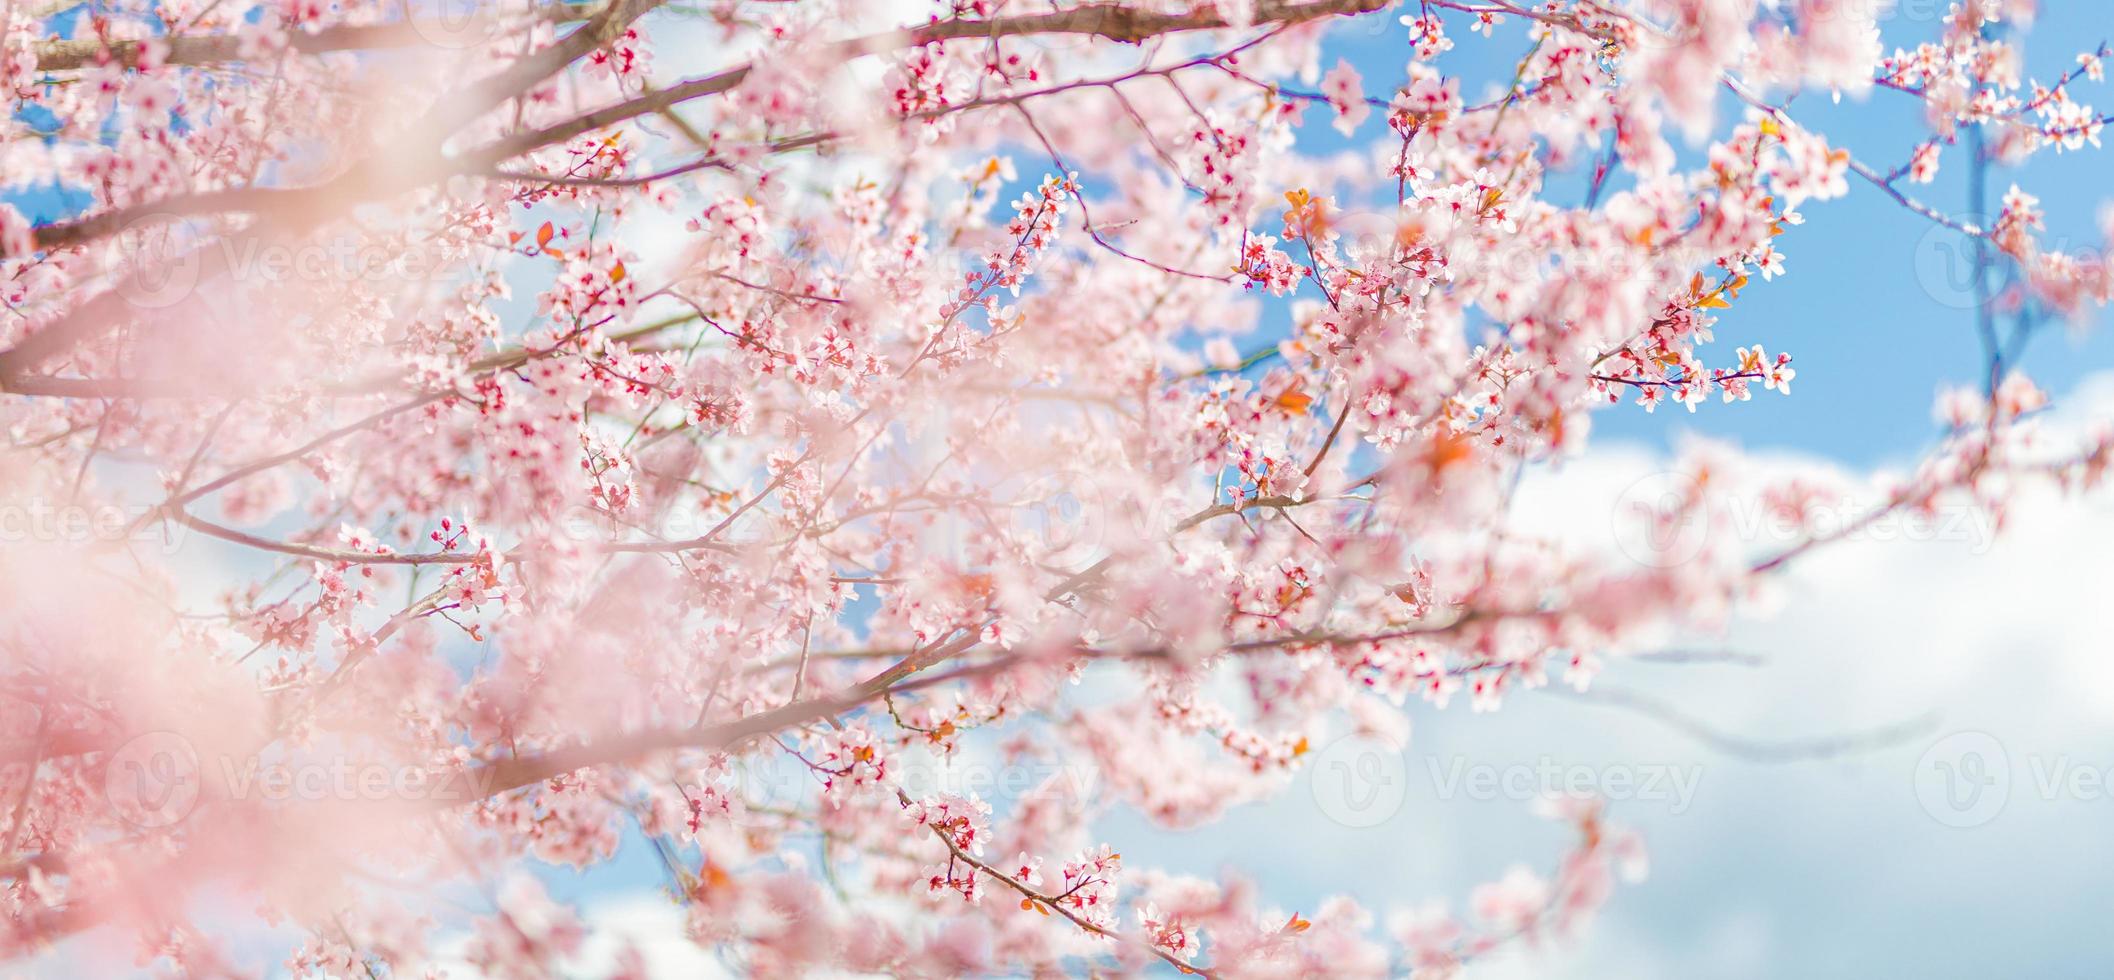 soligt blommande körsbär på suddig kärleksbakgrund på våren på naturen utomhus. rosa sakura blommor, fantastiska färgglada drömmande romantiska konstnärliga bild våren natur, banner design foto